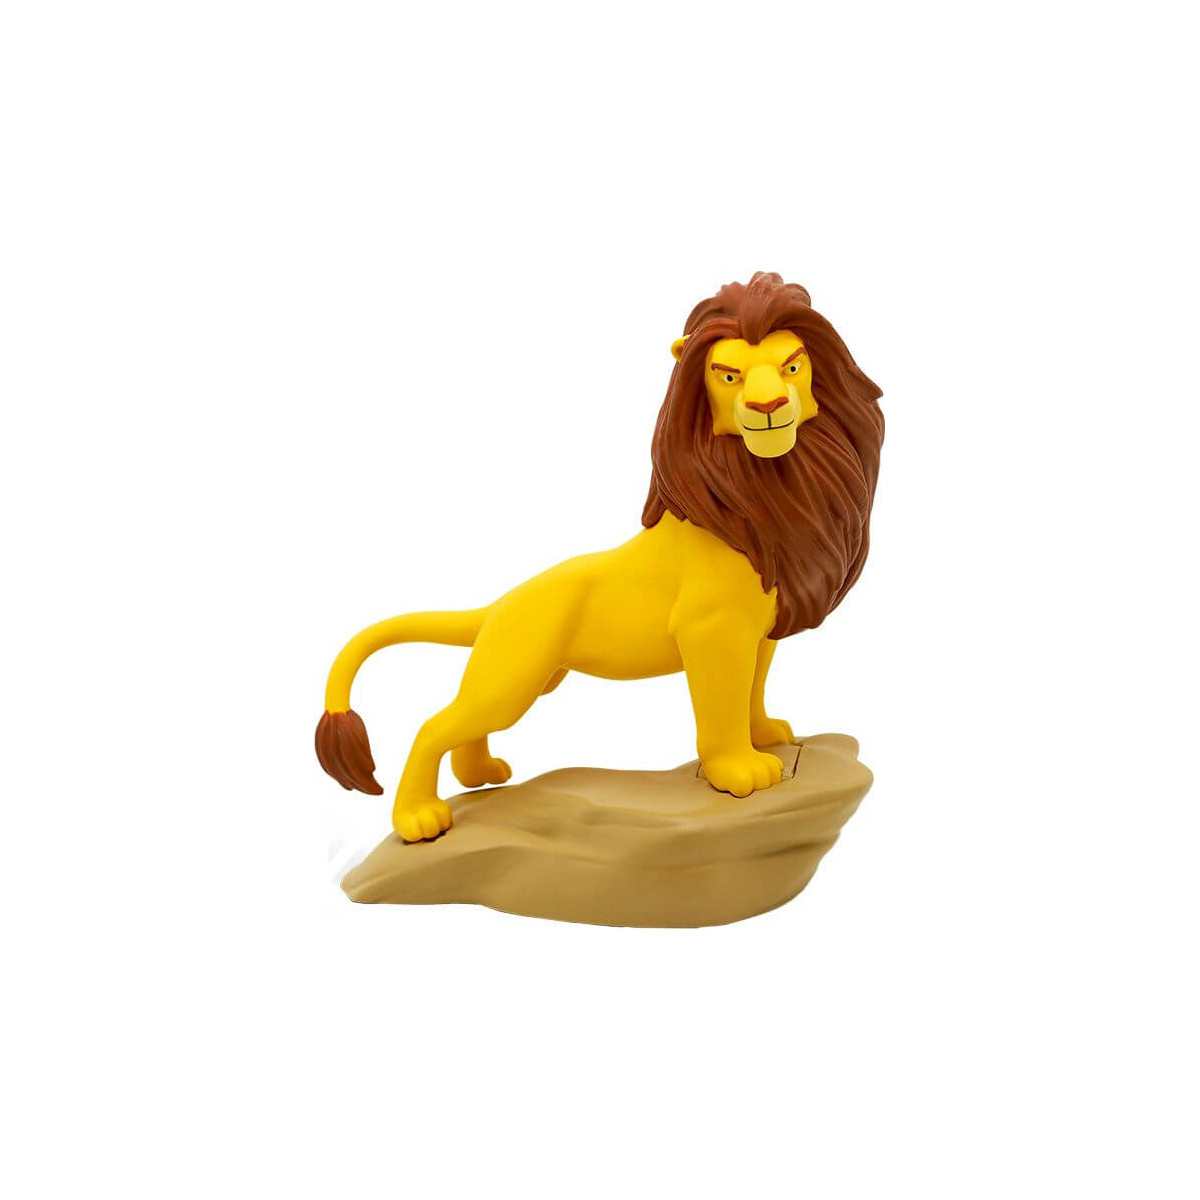 Tonies® Disney   König der Löwen